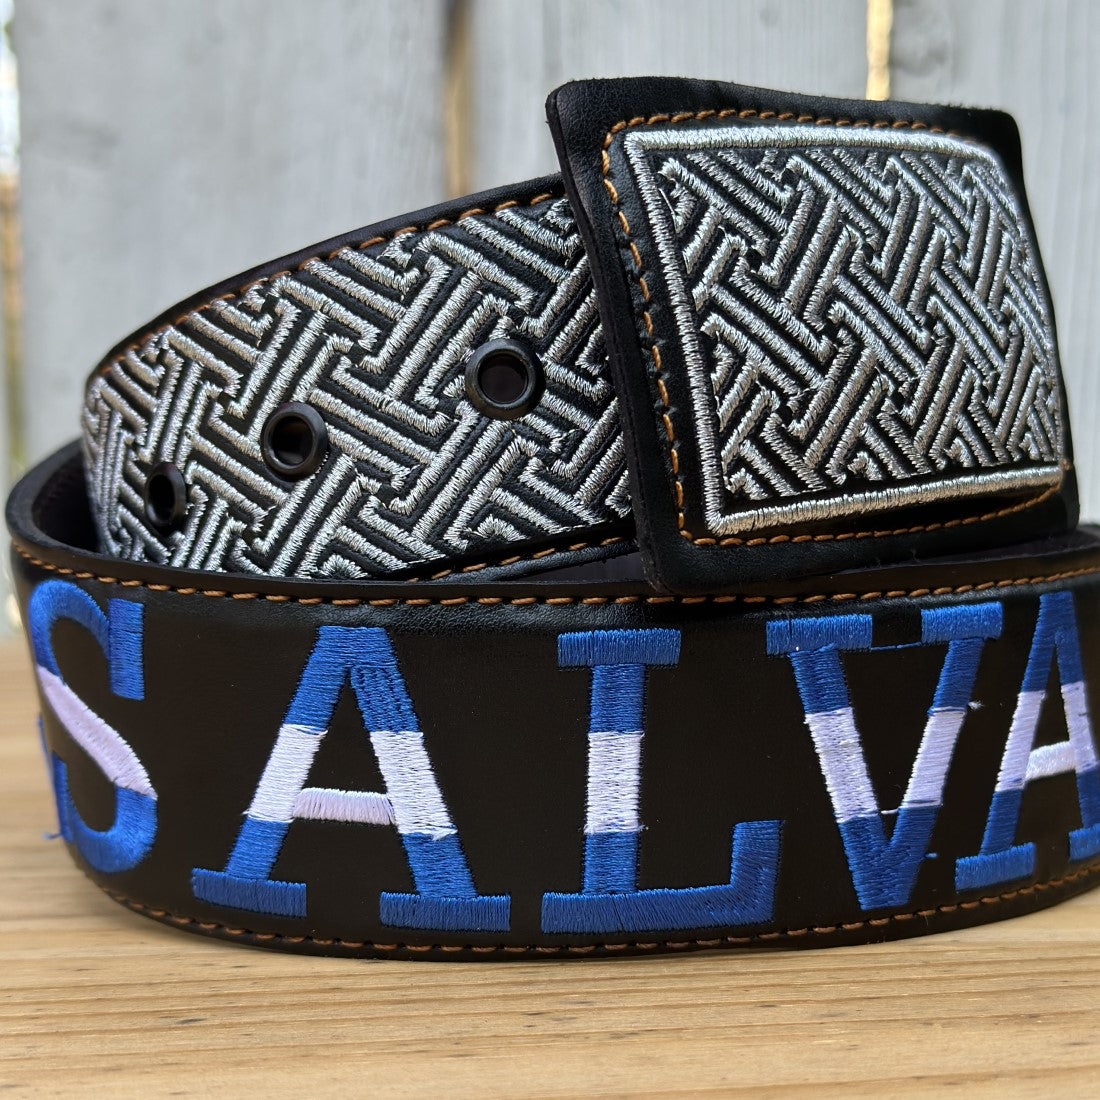 Cinturon de El Salvador Personalizado - Cinturon con El Salvador Bordado - Cinturones Personalizados (3)